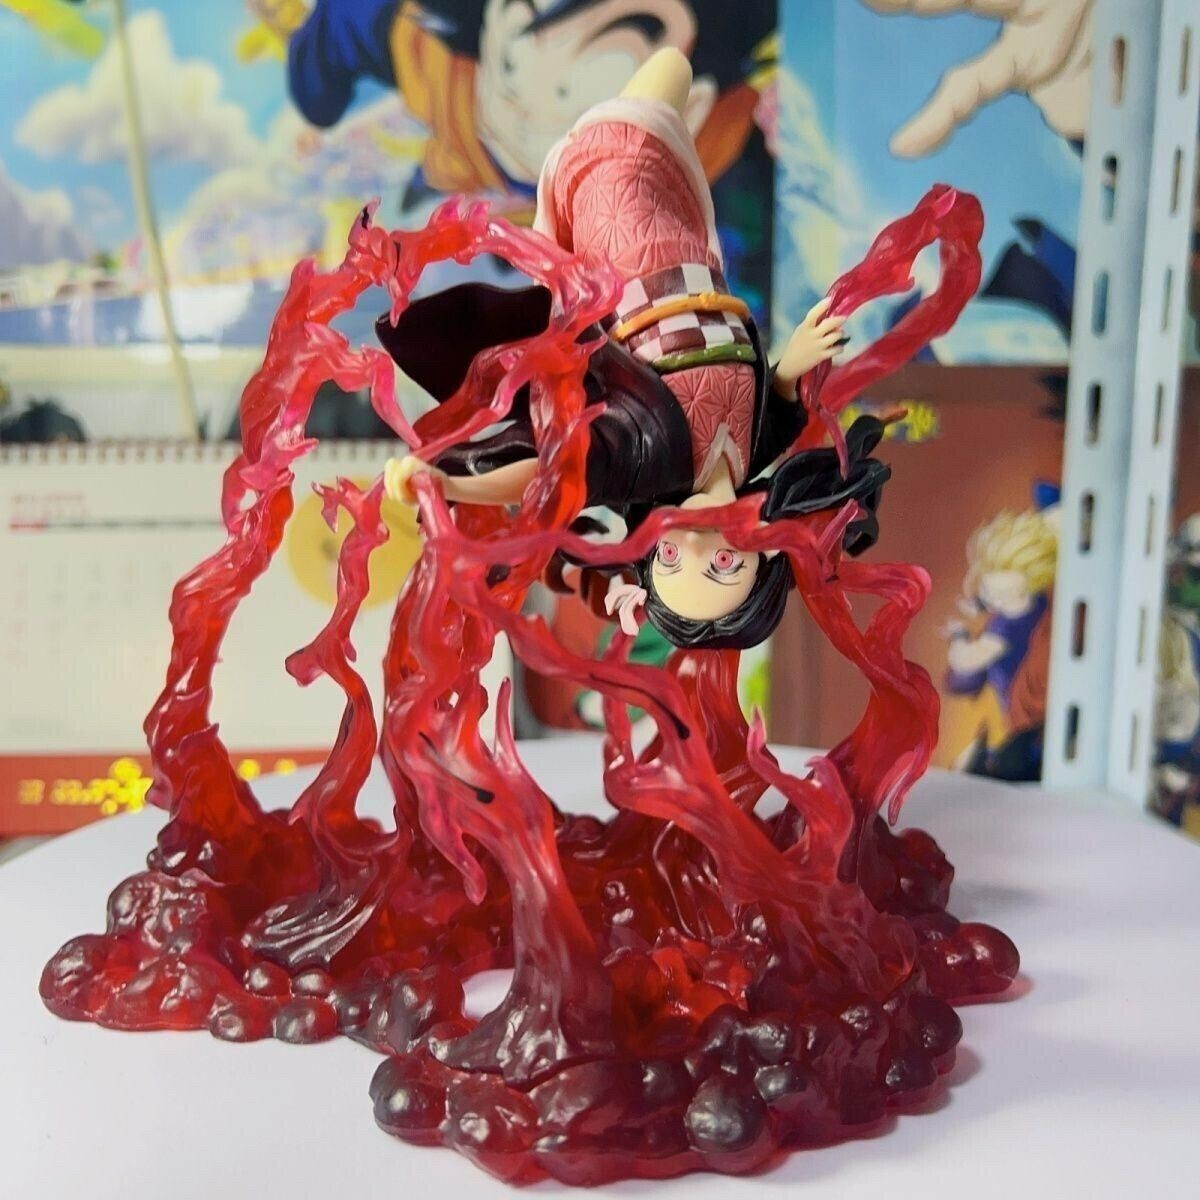 Anime Demon Slayer Figure Kimetsu No Yaiba Kamado Nezuko Action Toy New Gift